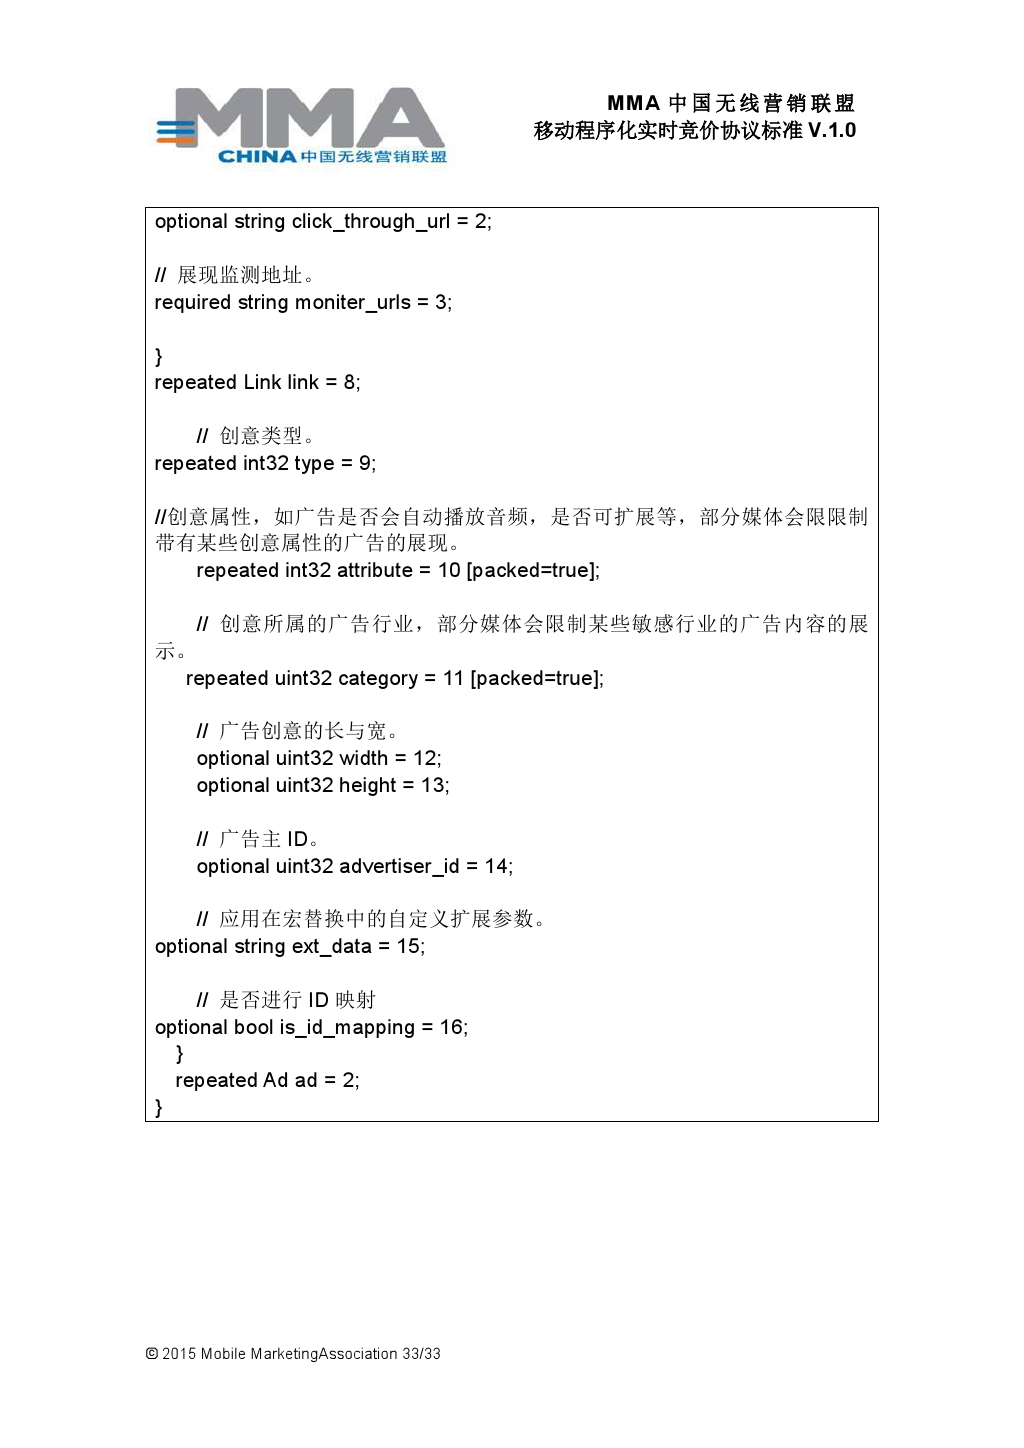 MMA中国无线营销联盟移动程序化实时竞价协议标准V.1.0_000034